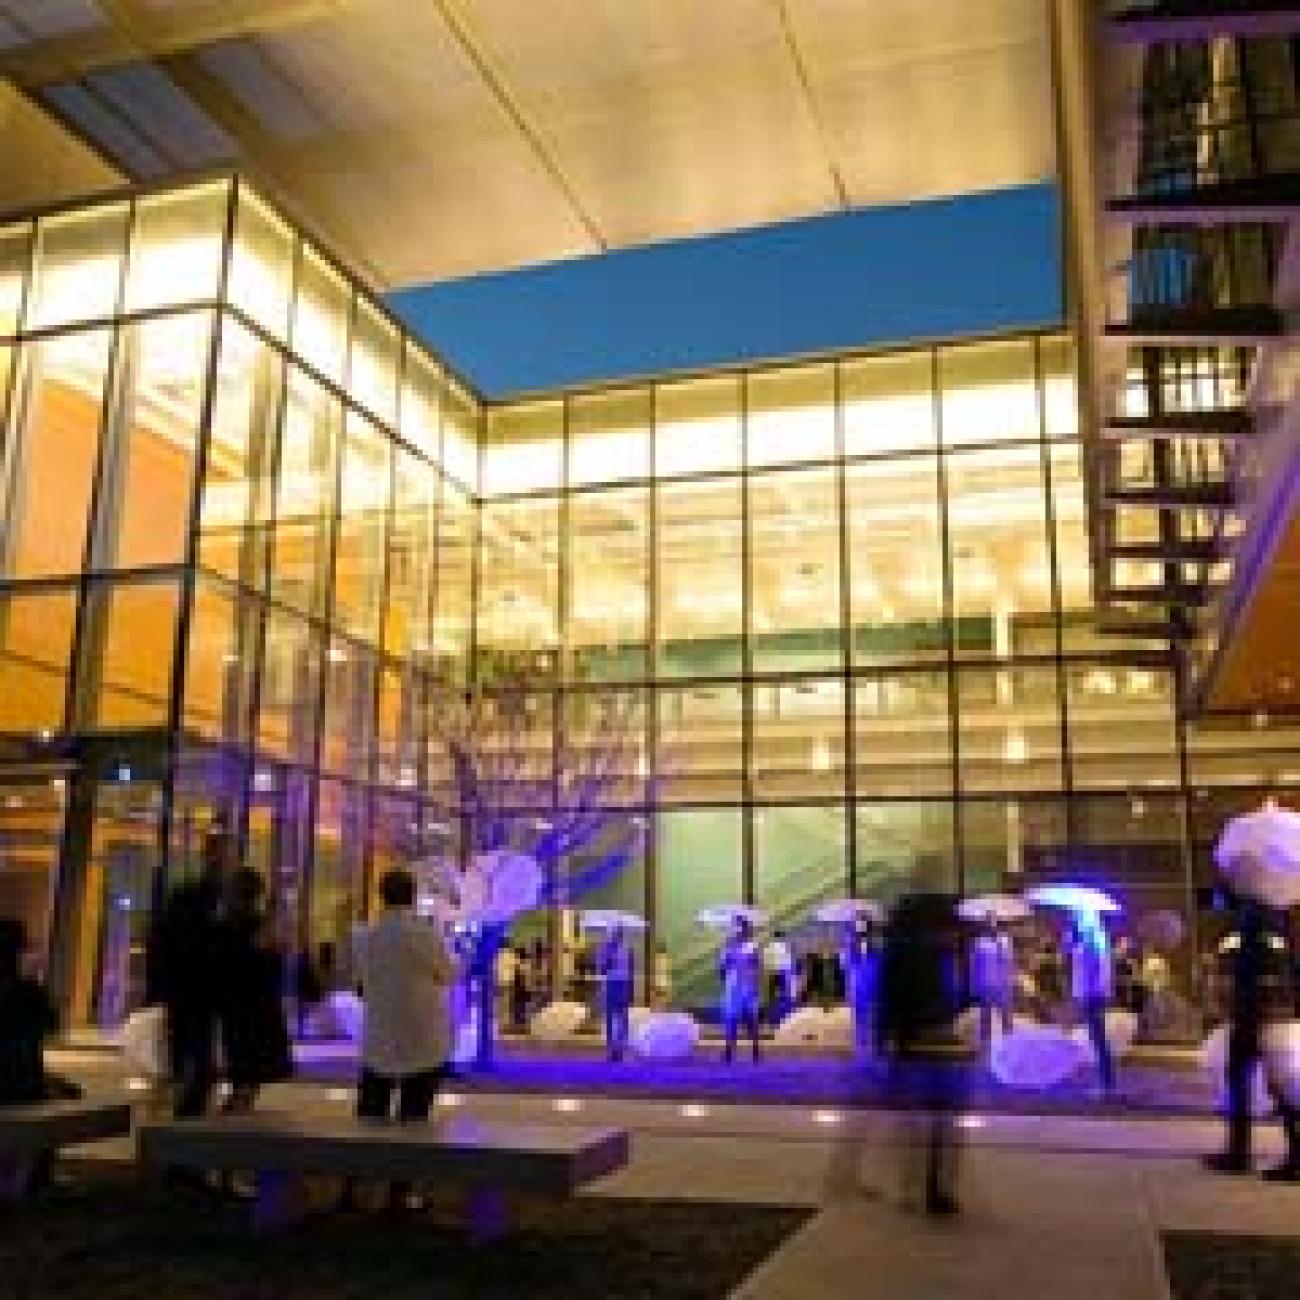 Image of Duke's Rubenstein Arts Center